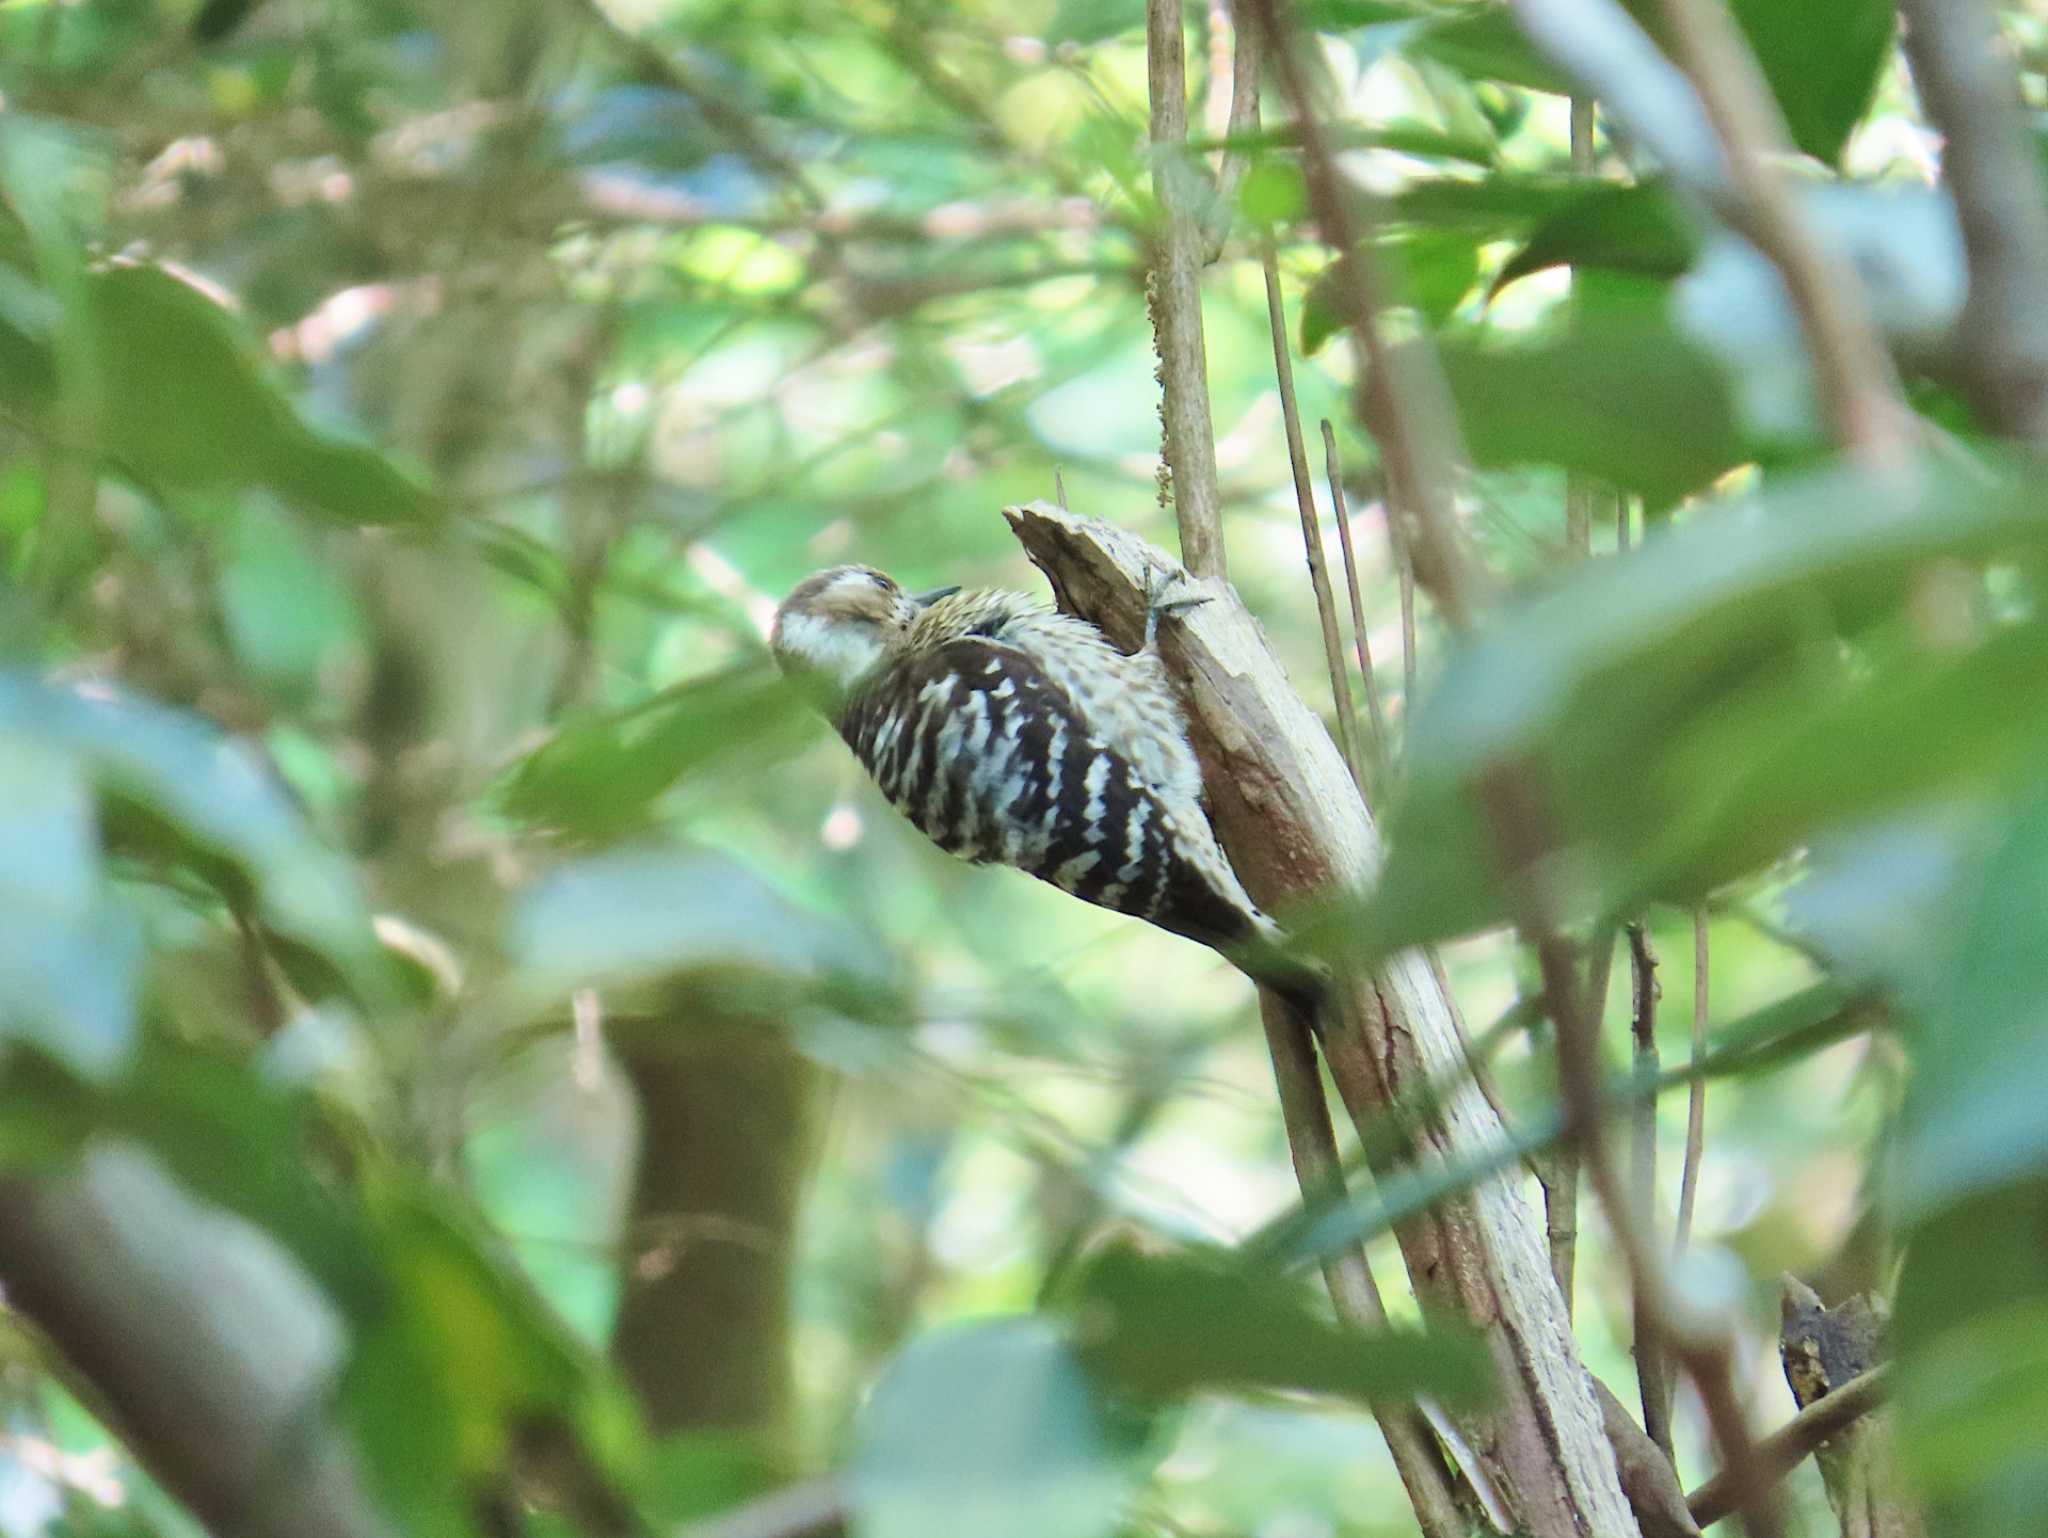 Photo of Japanese Pygmy Woodpecker at 大阪府民の森むろいけ園地 by Toshihiro Yamaguchi